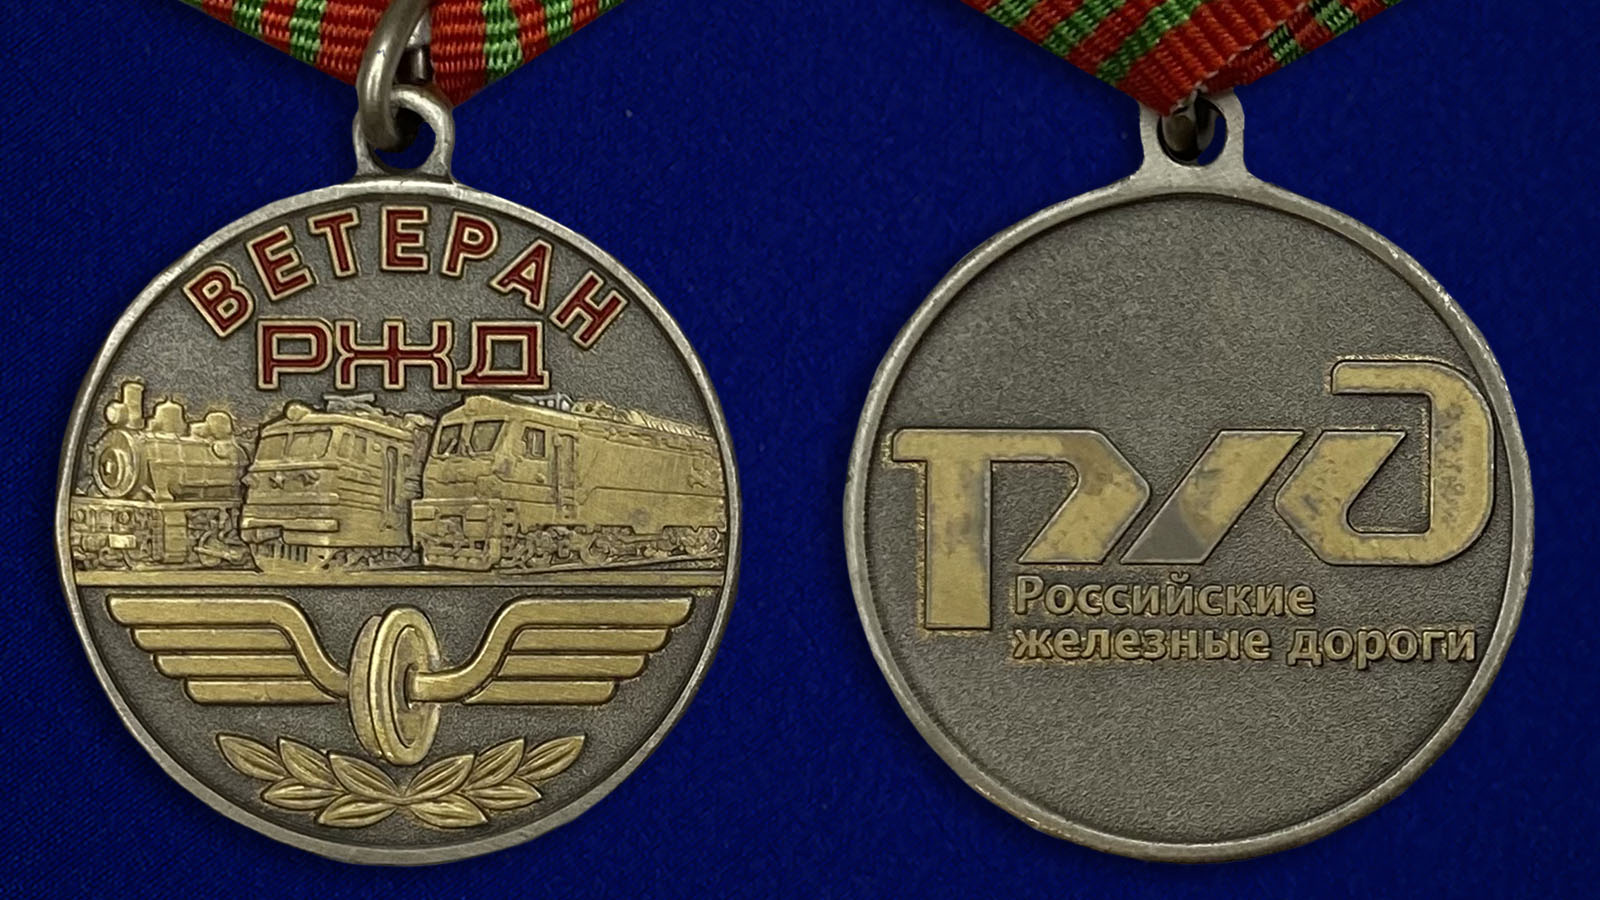 Заказать медаль "Ветеран РЖД" в Военпро